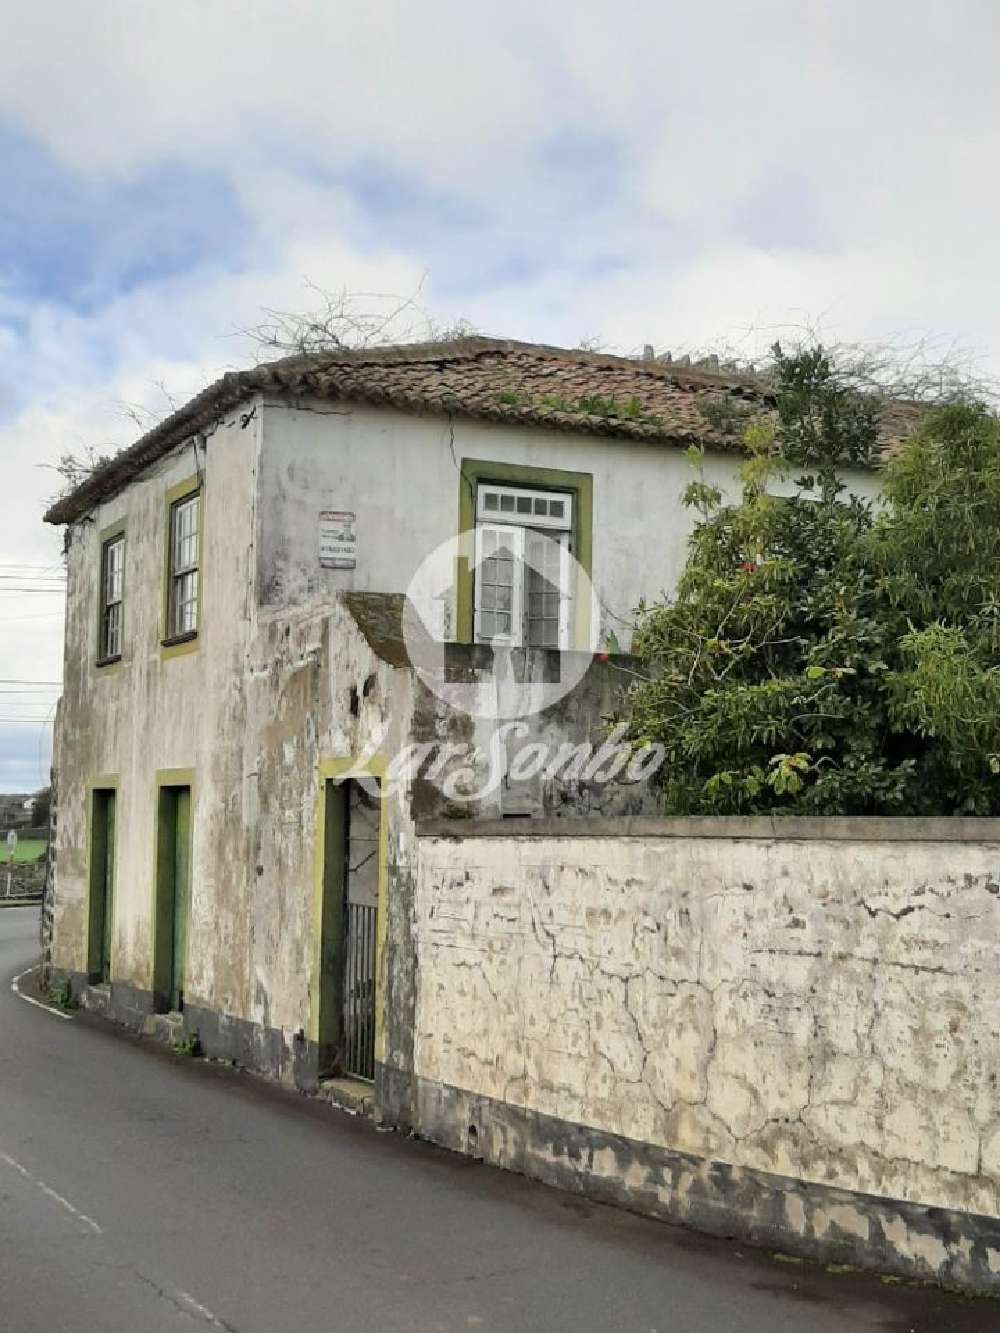  à venda casa  Calheta  Calheta (Madeira) 2